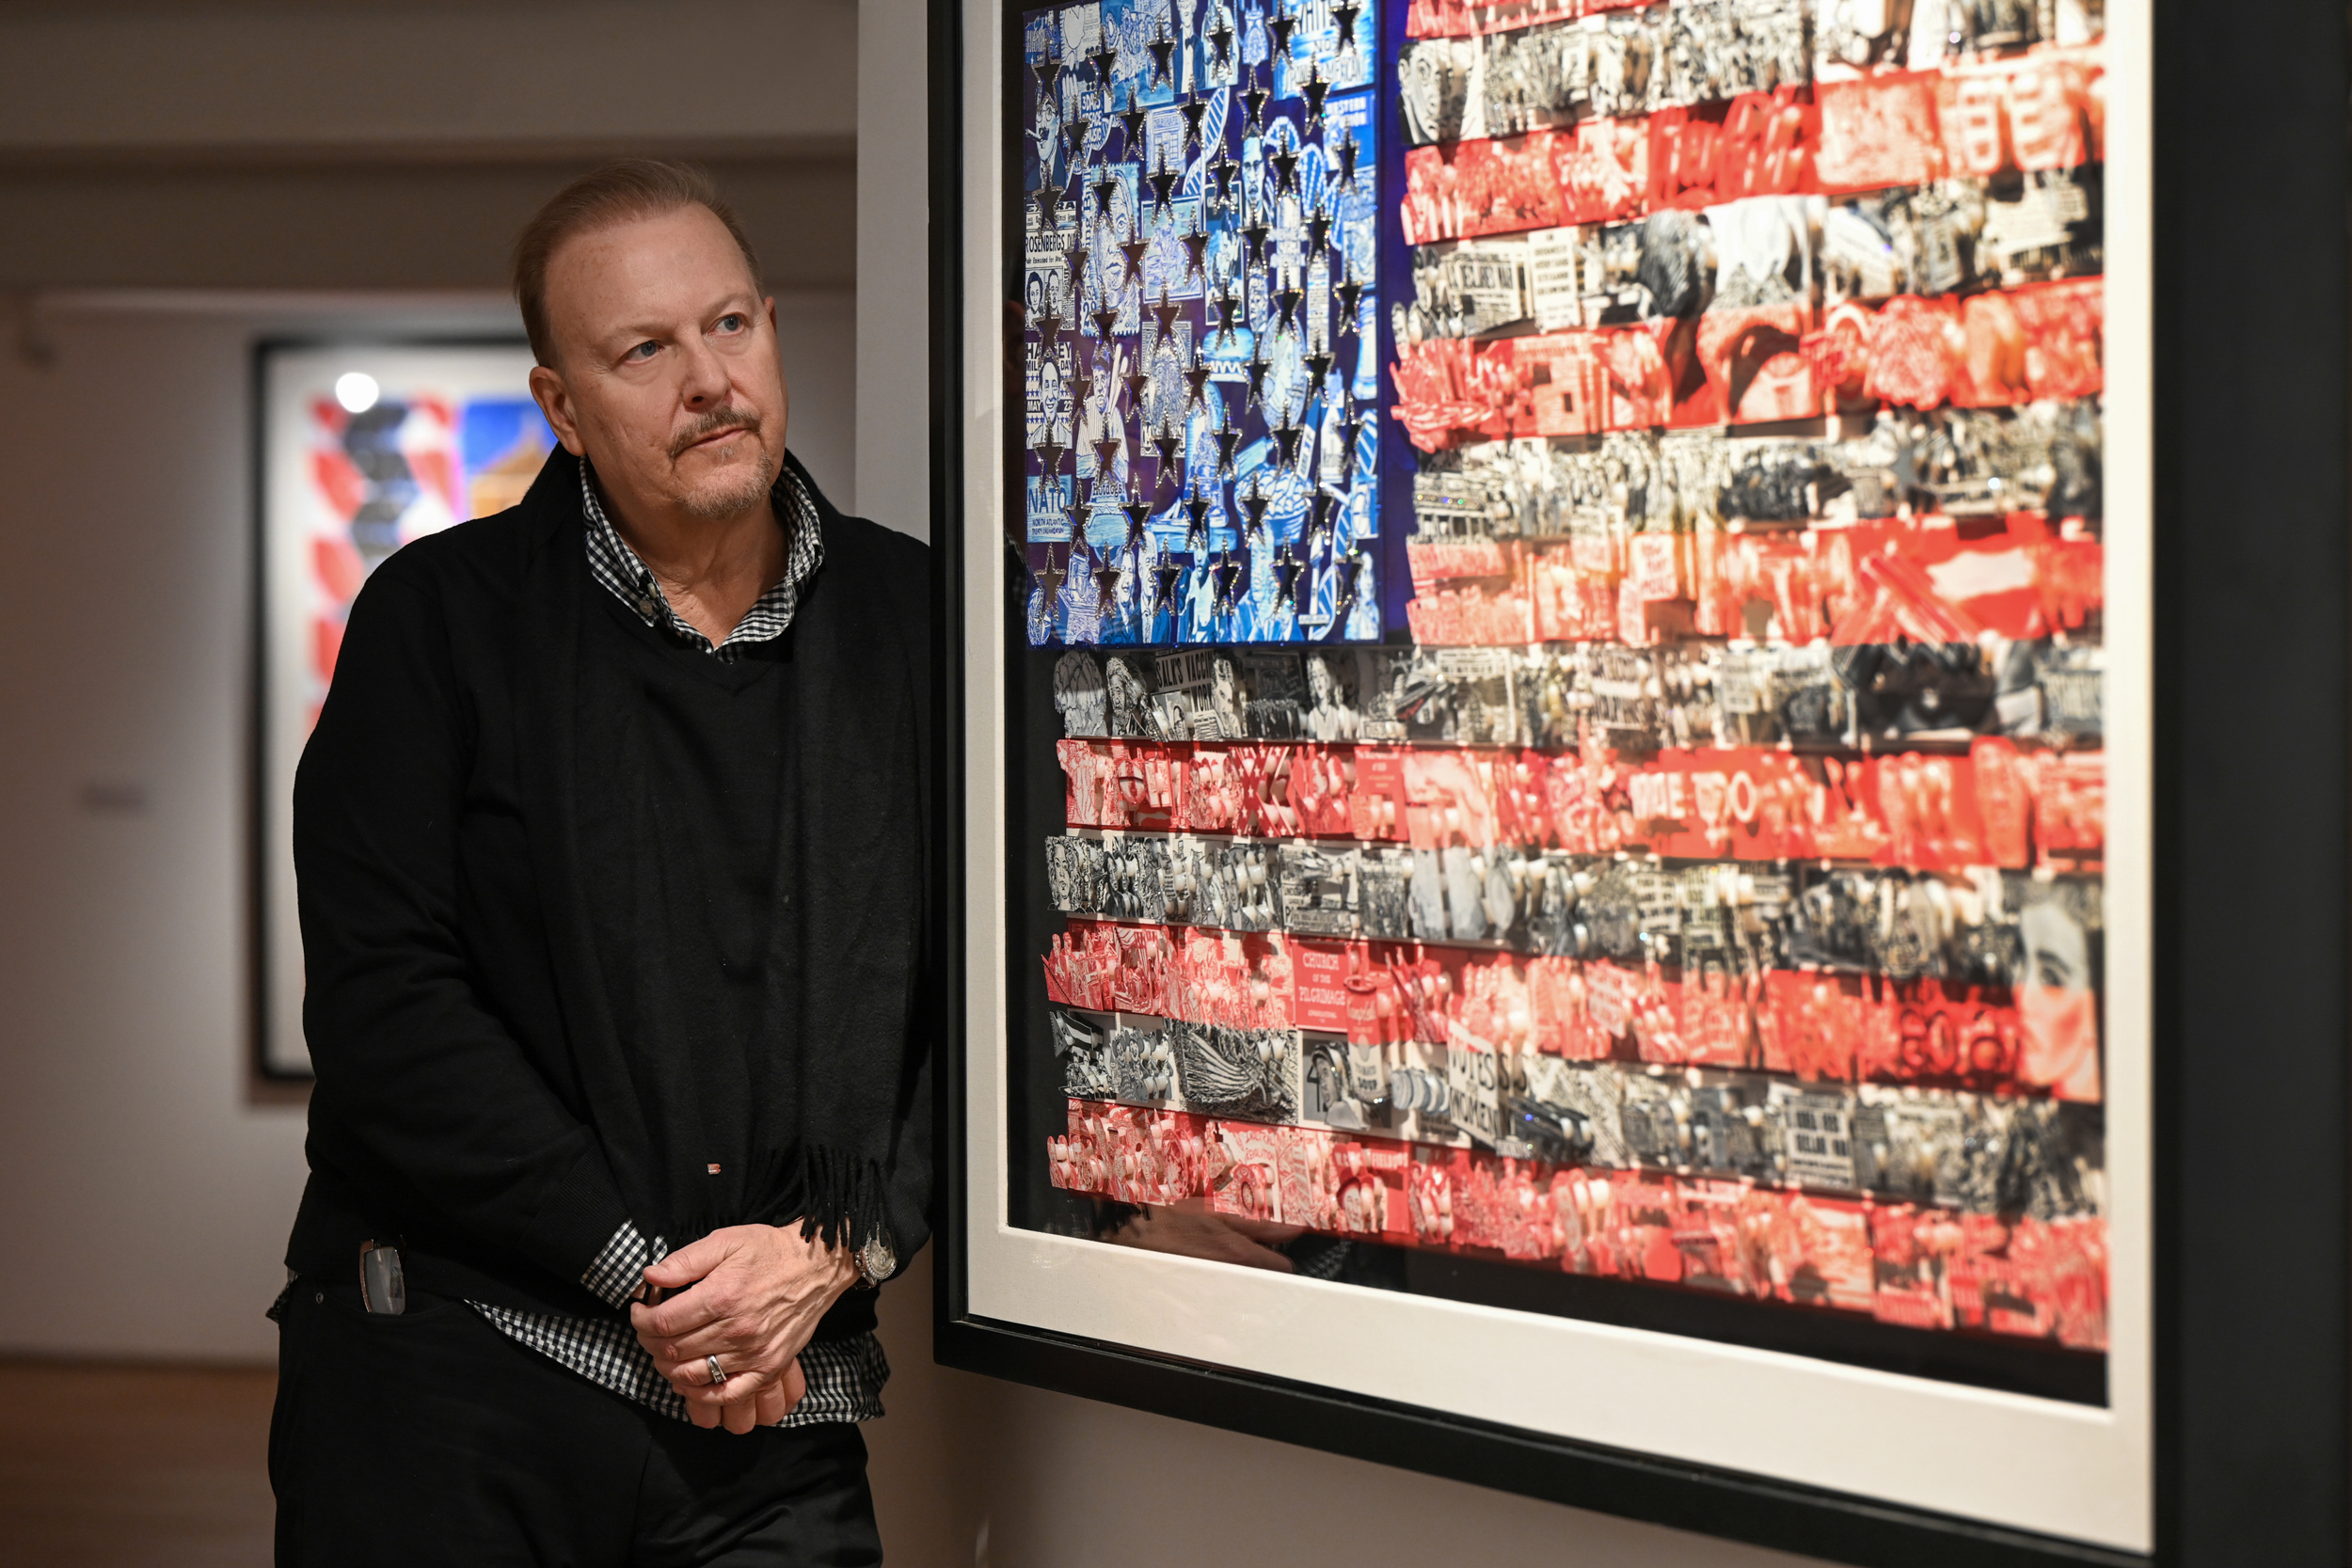 Fazzino se apoya en la pared de la galería junto a la bandera estadounidense de arte pop en 3D que presenta eventos históricos y figuras notables en azul, rojo y blanco.